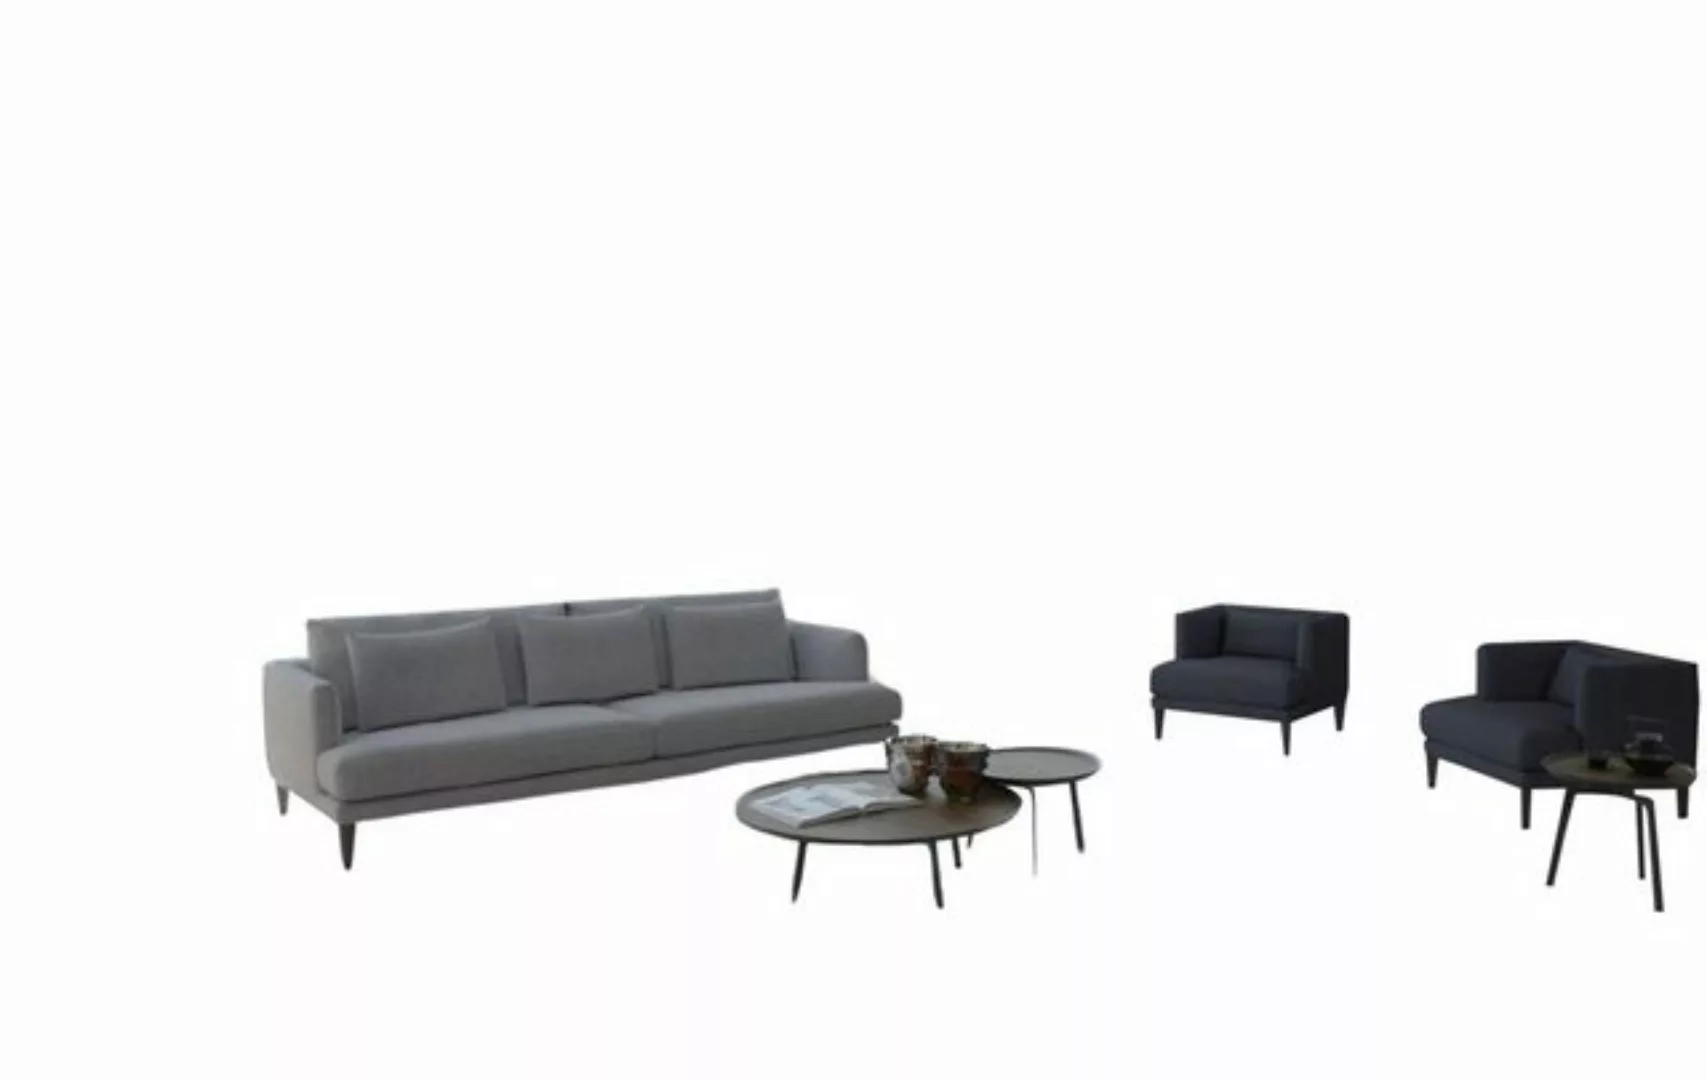 JVmoebel Sofa Graues Polstergruppenset Couchensemble Sofaeinrichtung Luxus, günstig online kaufen